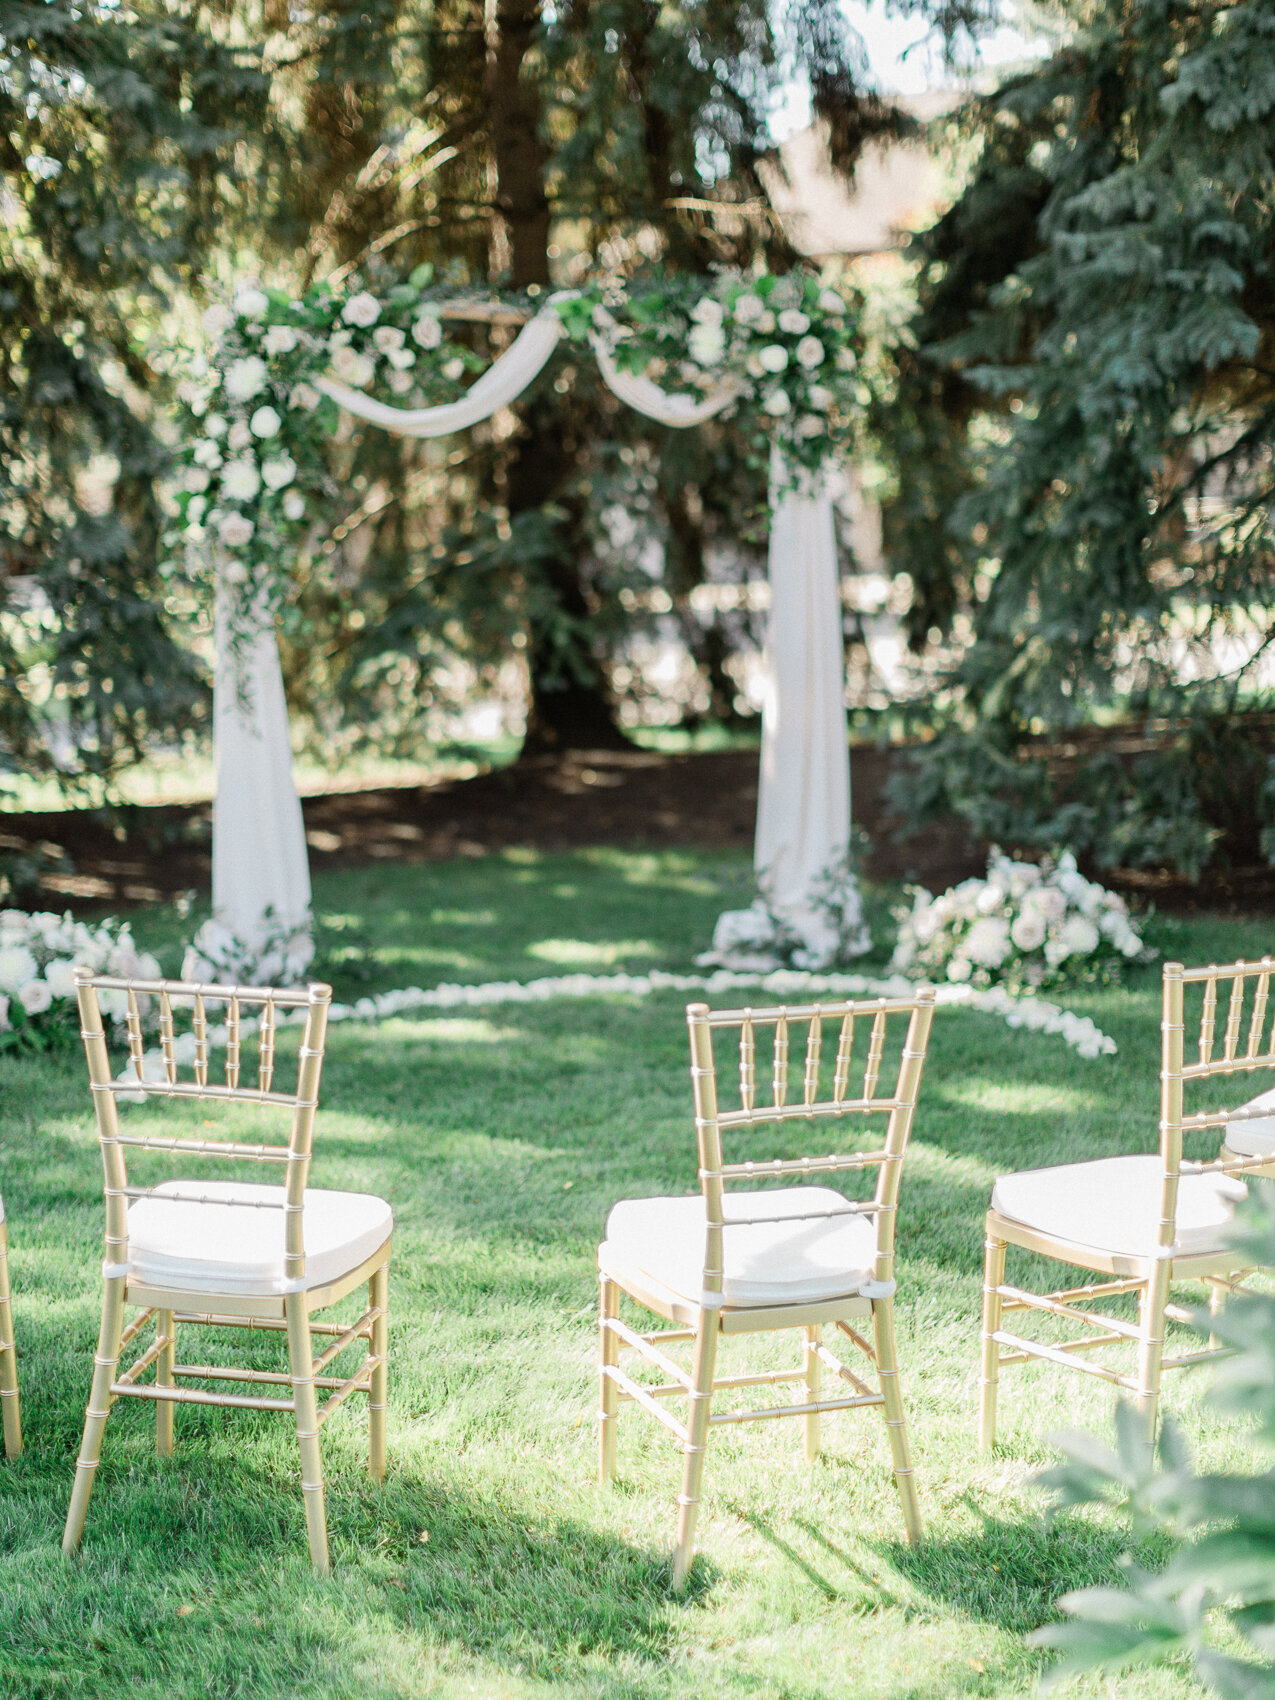 a classic floral wedding arch at a backyard wedding